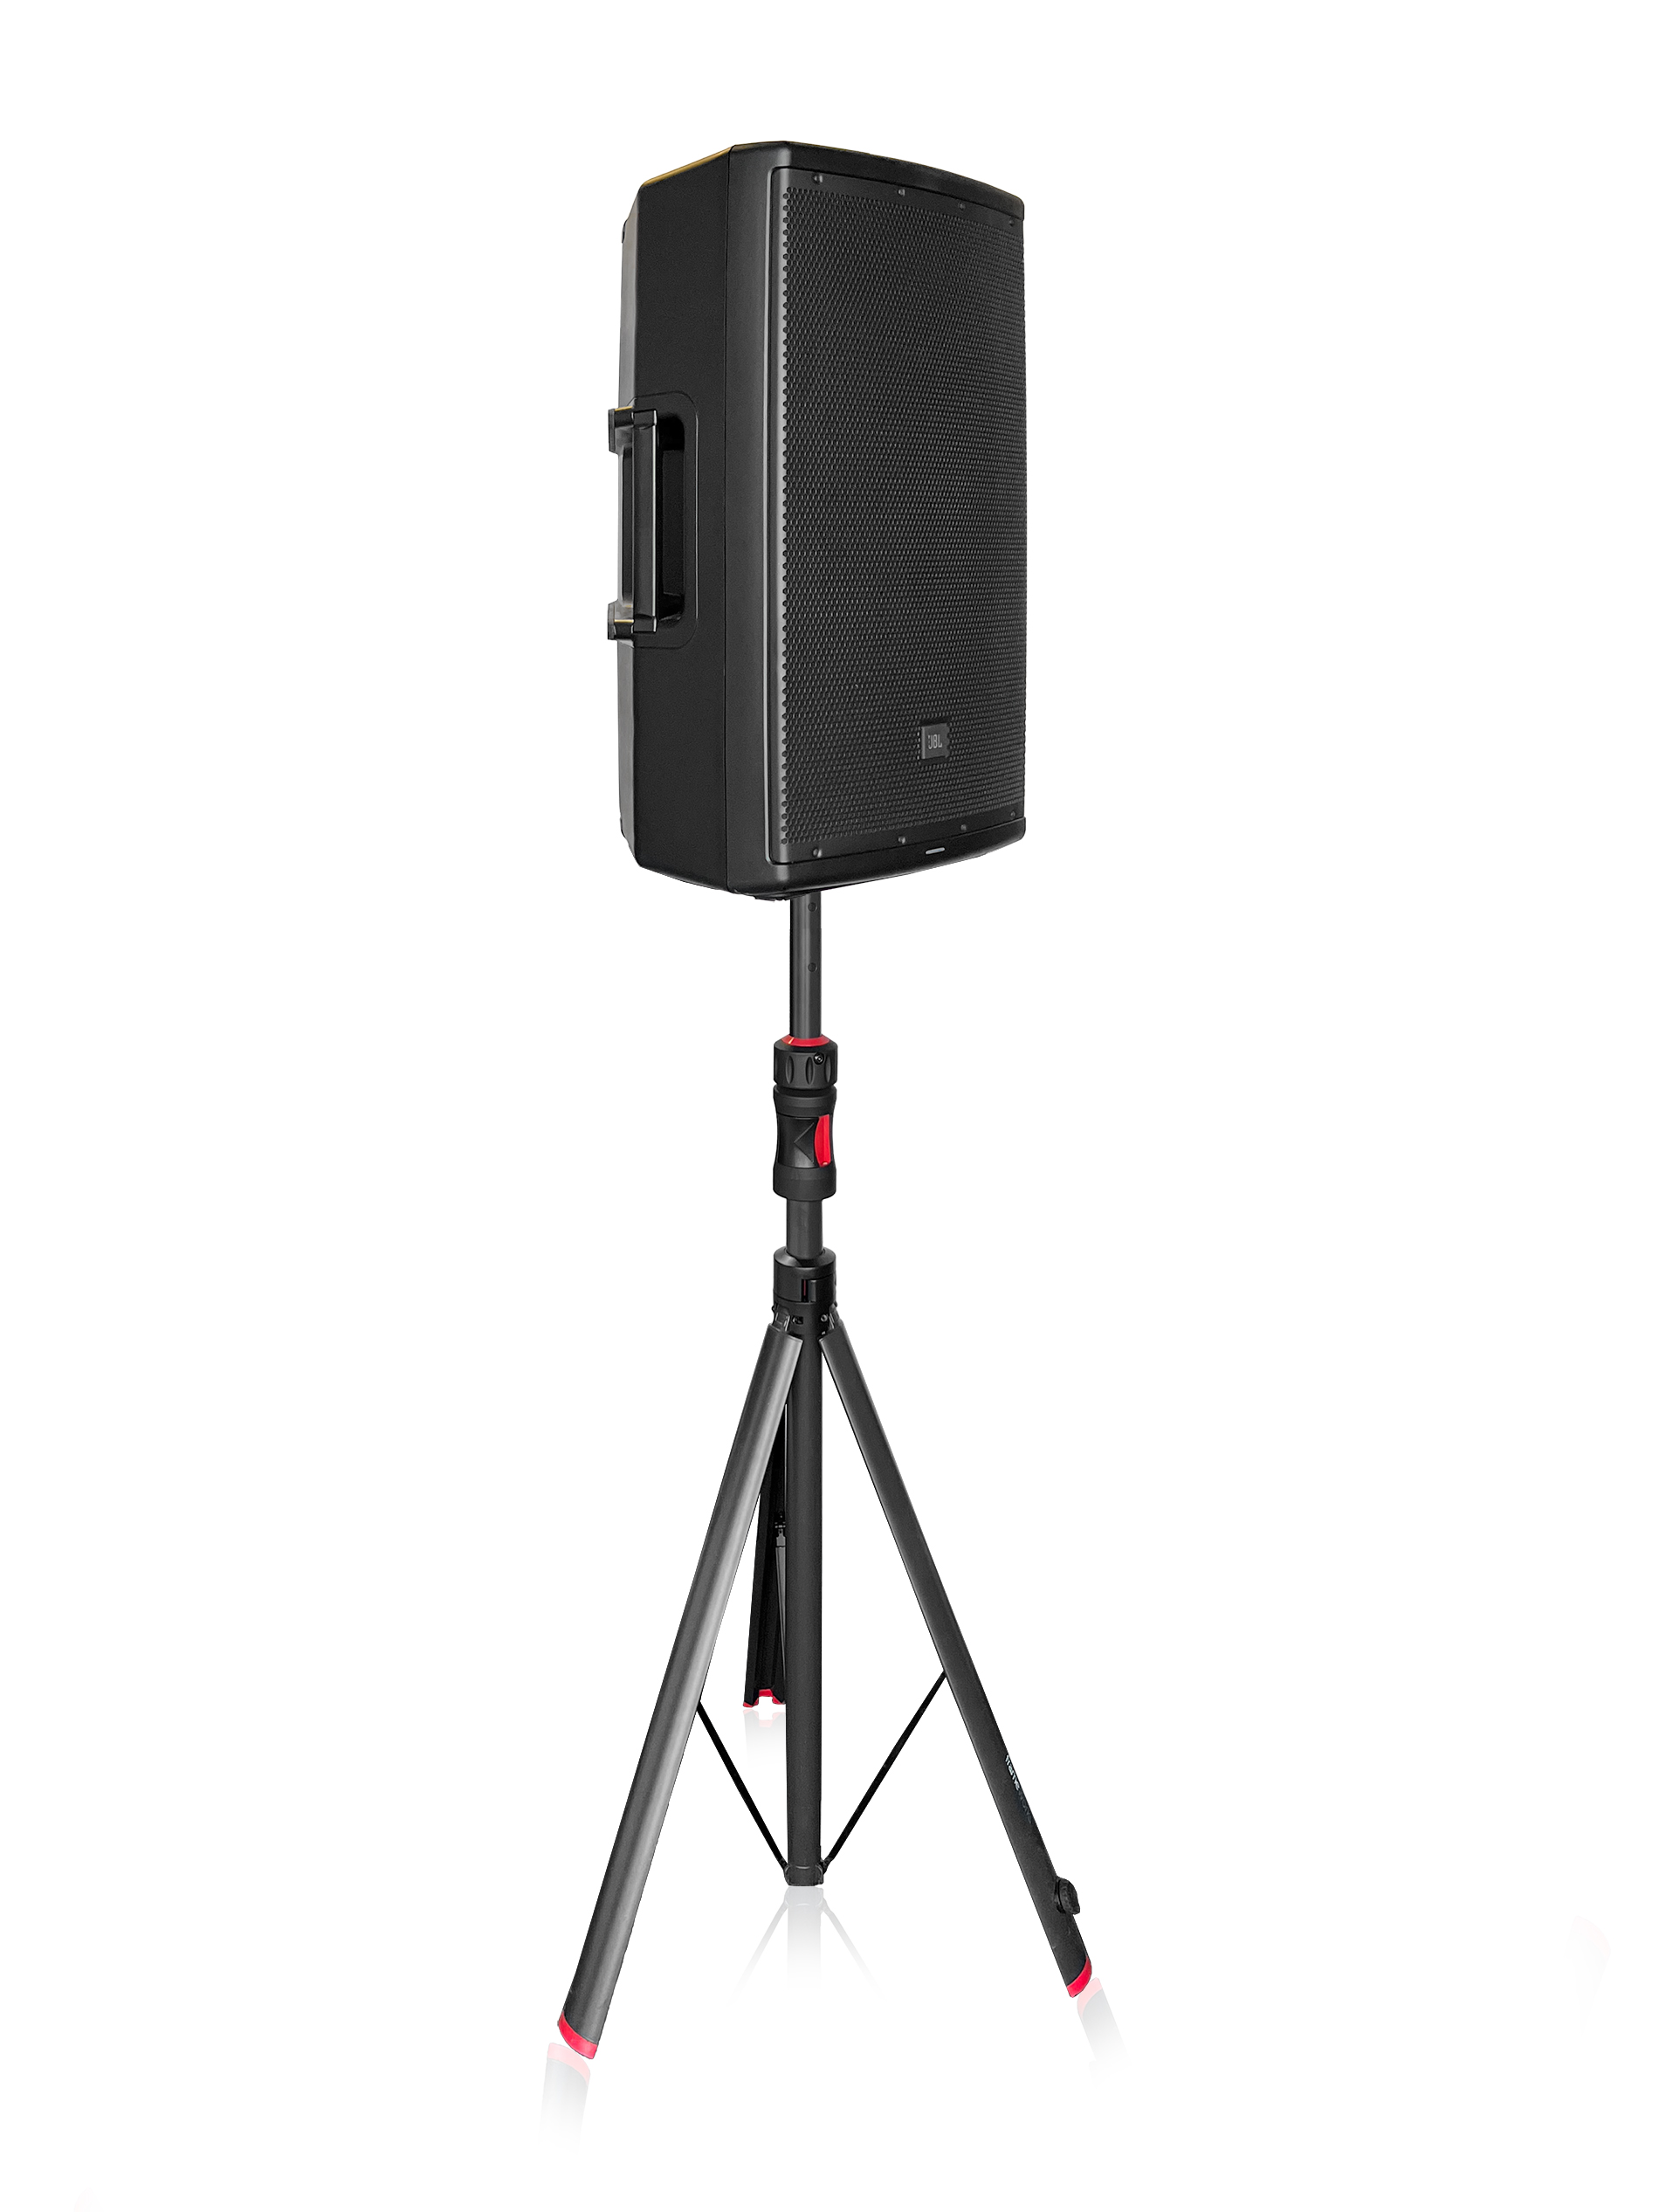 Pair of (2) ID series Speaker Stands-GFW-ID-SPKRSET